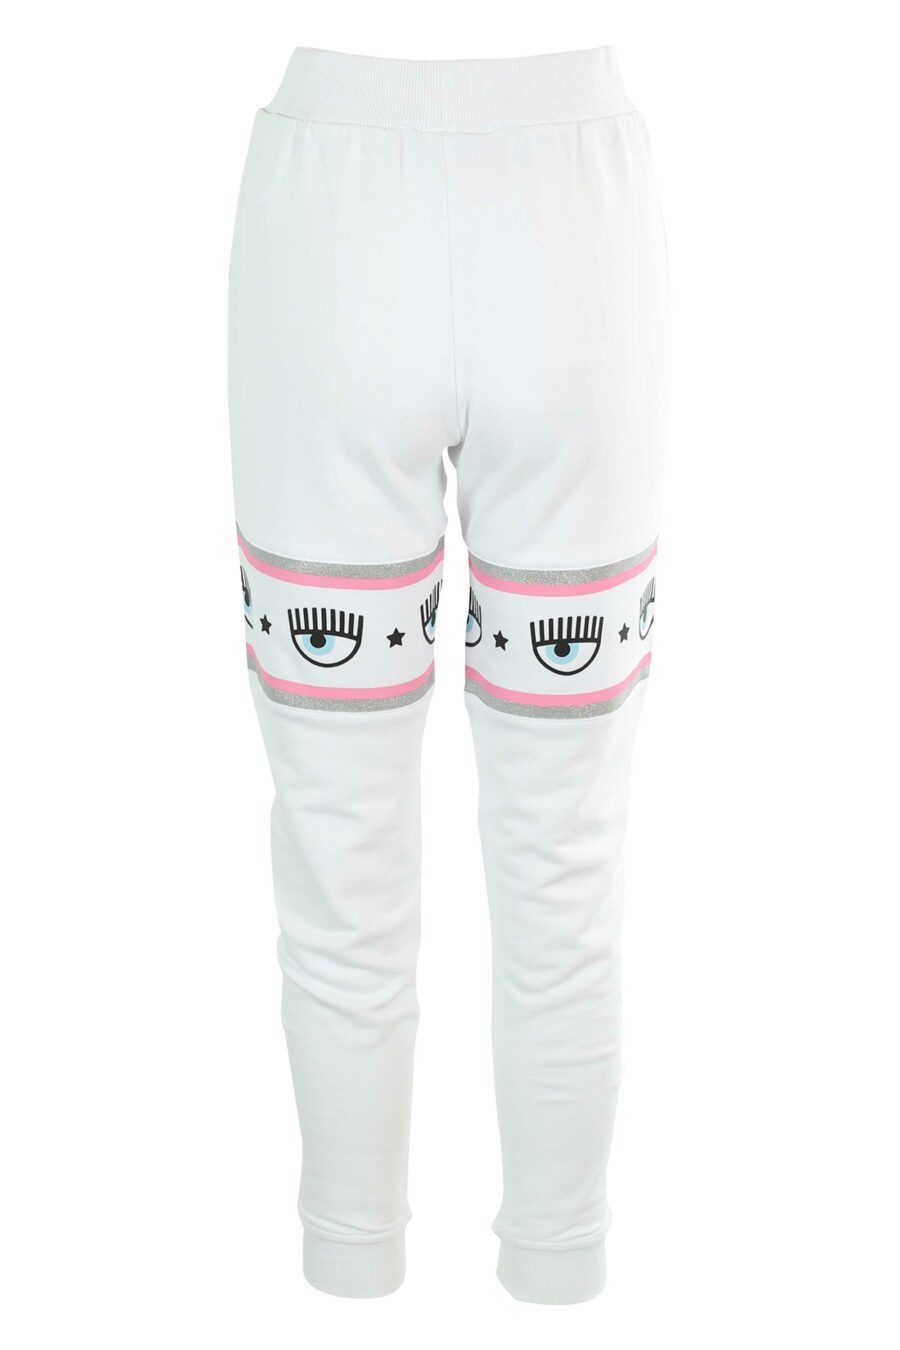 Pantalón de chándal blanco y logo en cinta rosa y plateado - 8052672419064 3